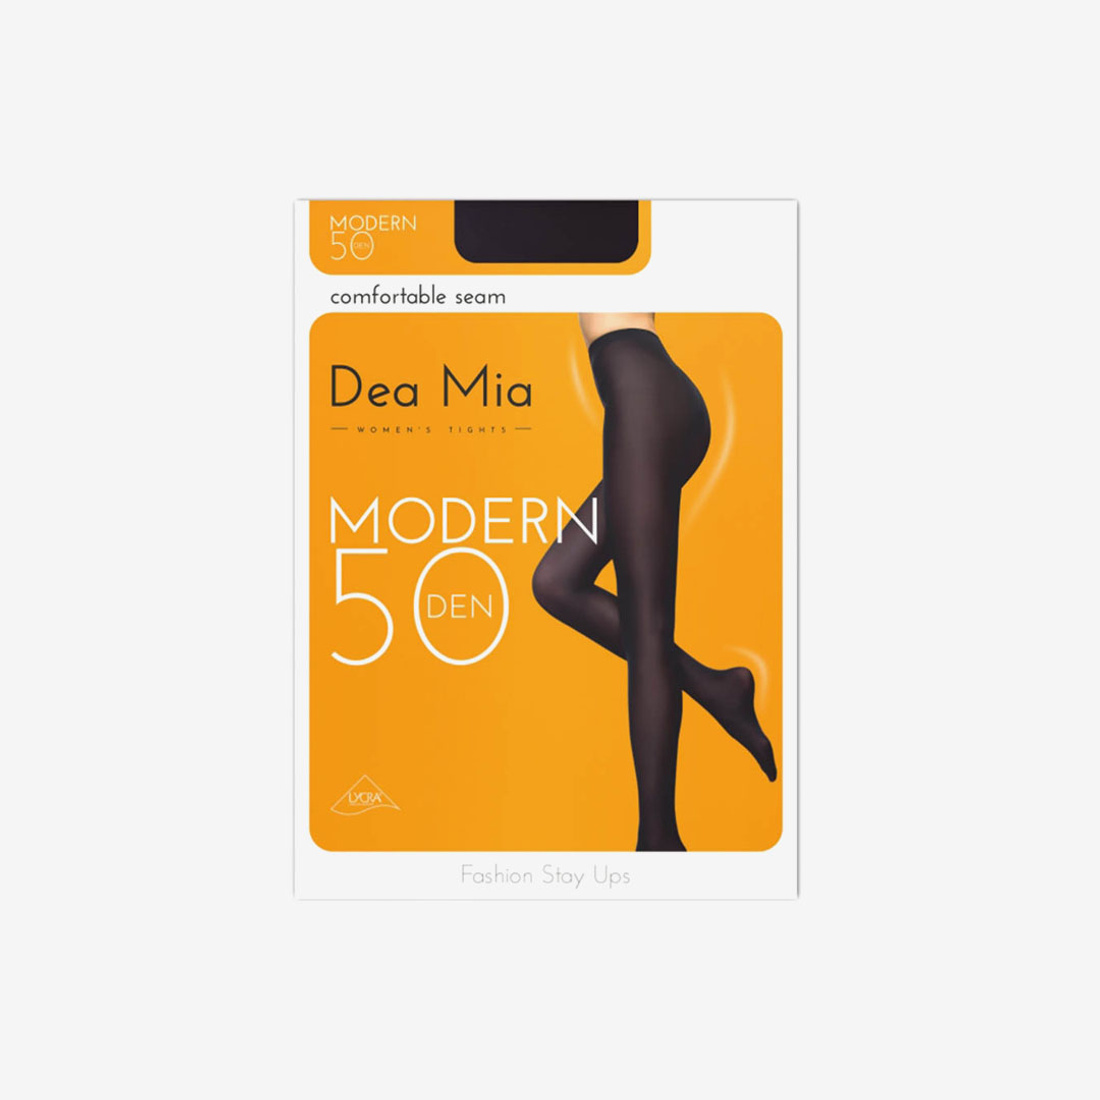 Колготки Dea Mia Modern женские чёрные 50 Den р-р 4 | Чулки и носки |  Arbuz.kz